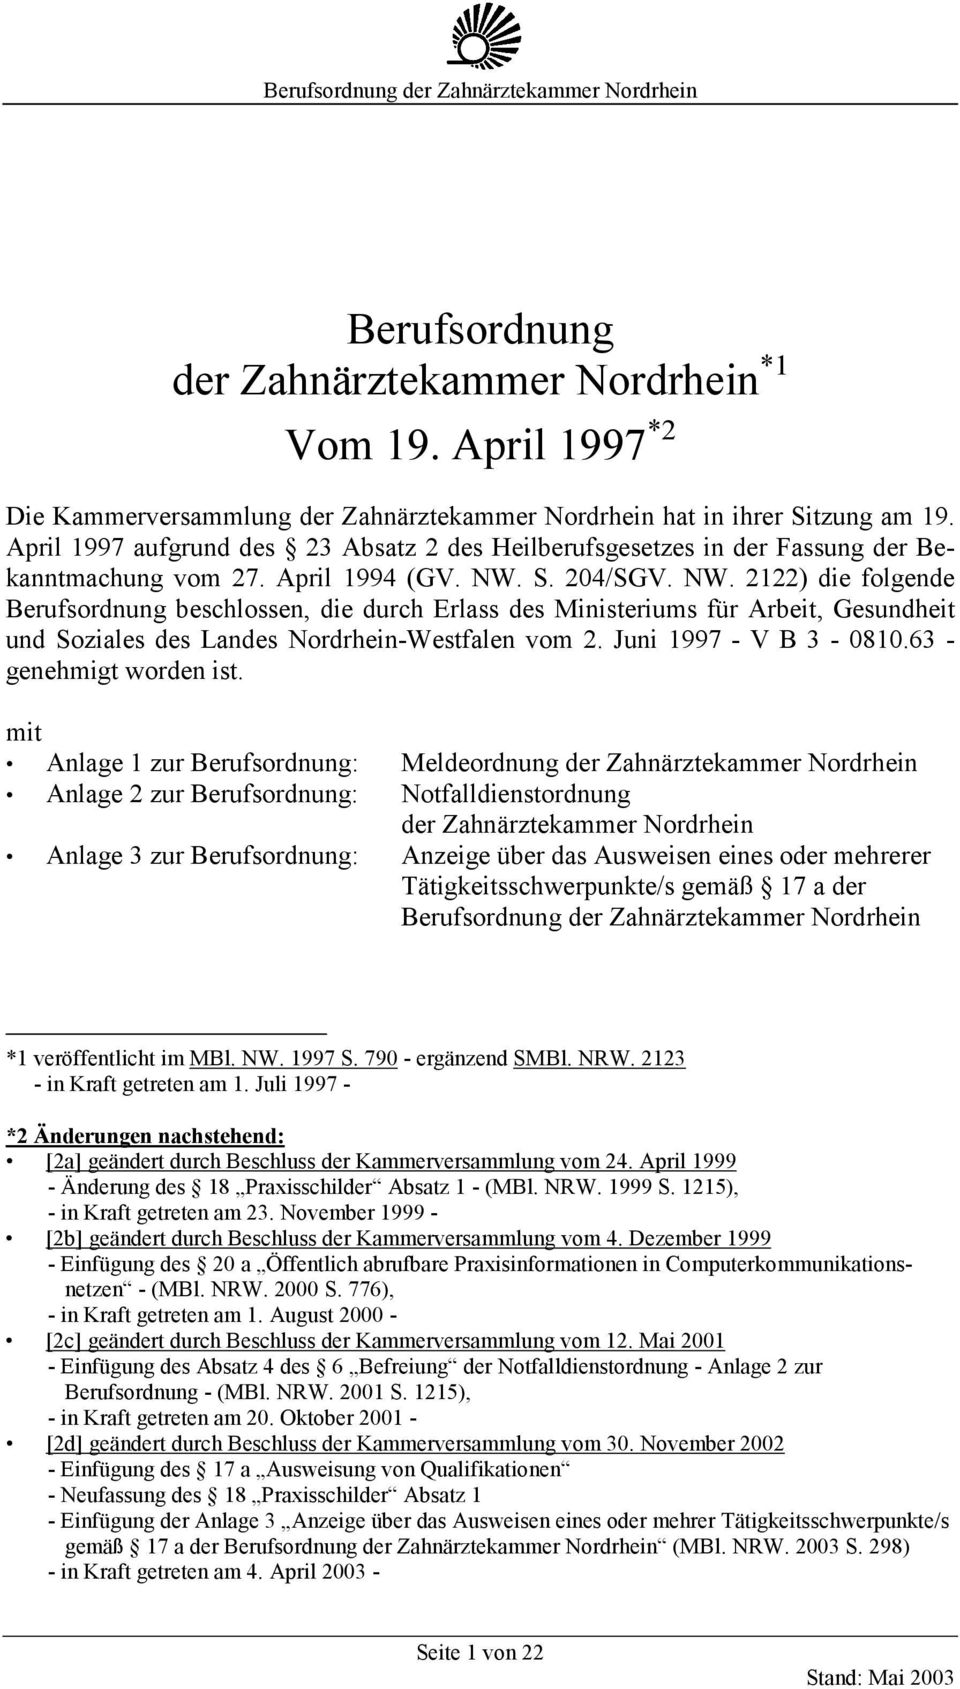 S. 204/SGV. NW. 2122) die folgende Berufsordnung beschlossen, die durch Erlass des Ministeriums für Arbeit, Gesundheit und Soziales des Landes Nordrhein-Westfalen vom 2. Juni 1997 - V B 3-0810.